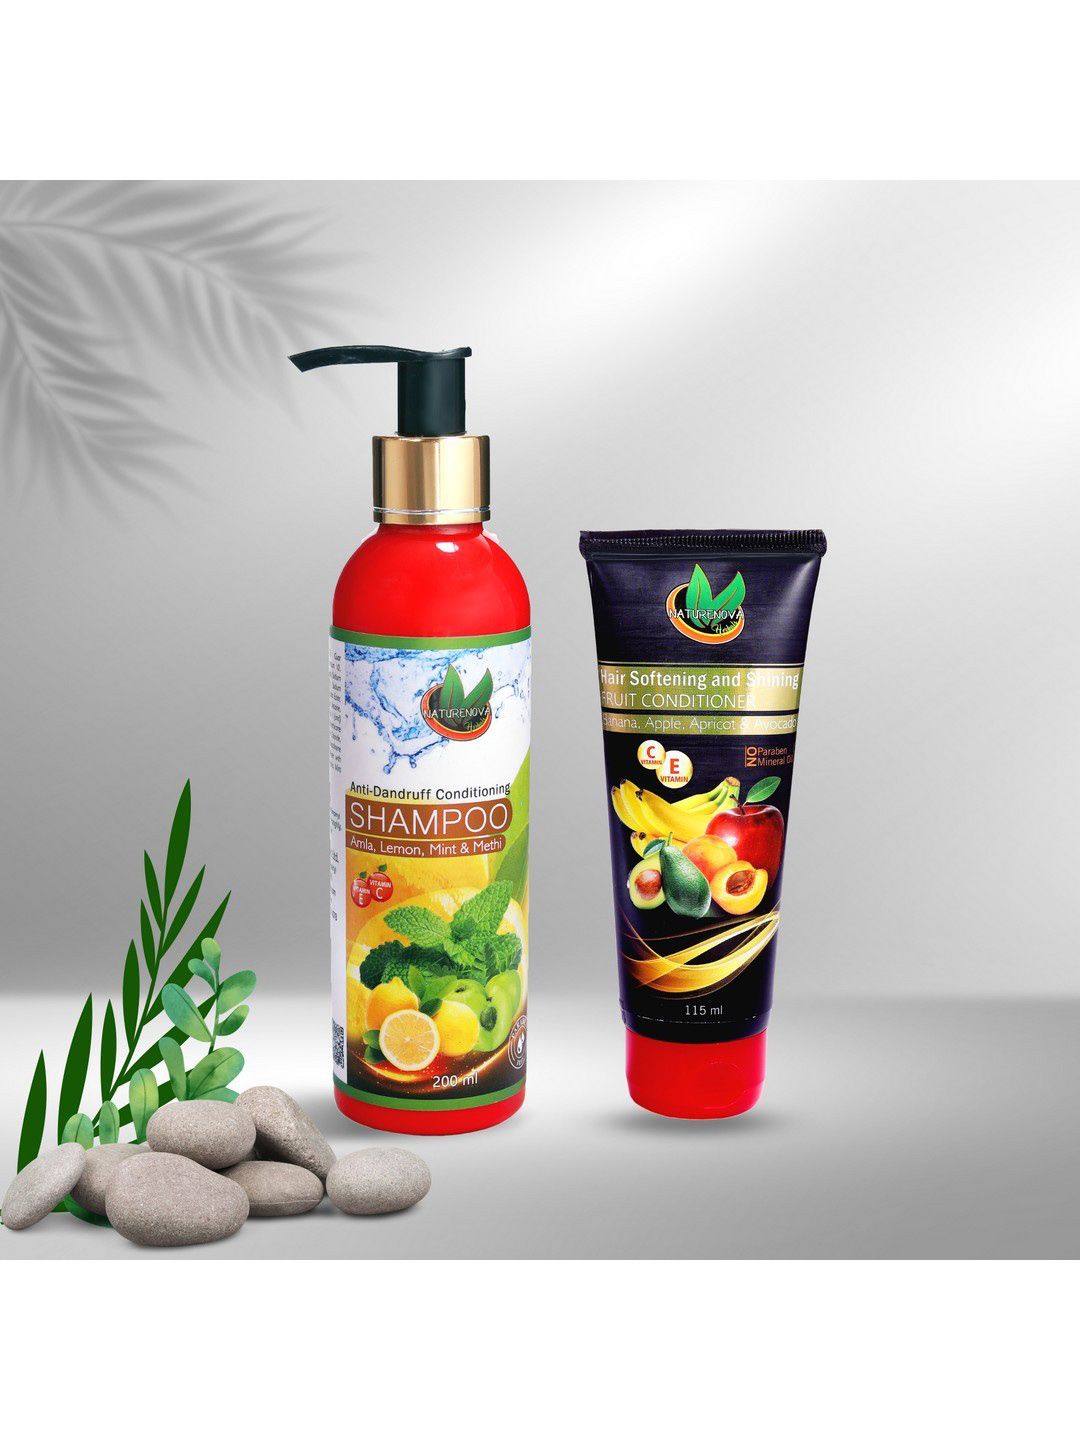 NatureNova Herbals Anti-Dandruff Shampoo & Fruit Conditioner Combo Price in India